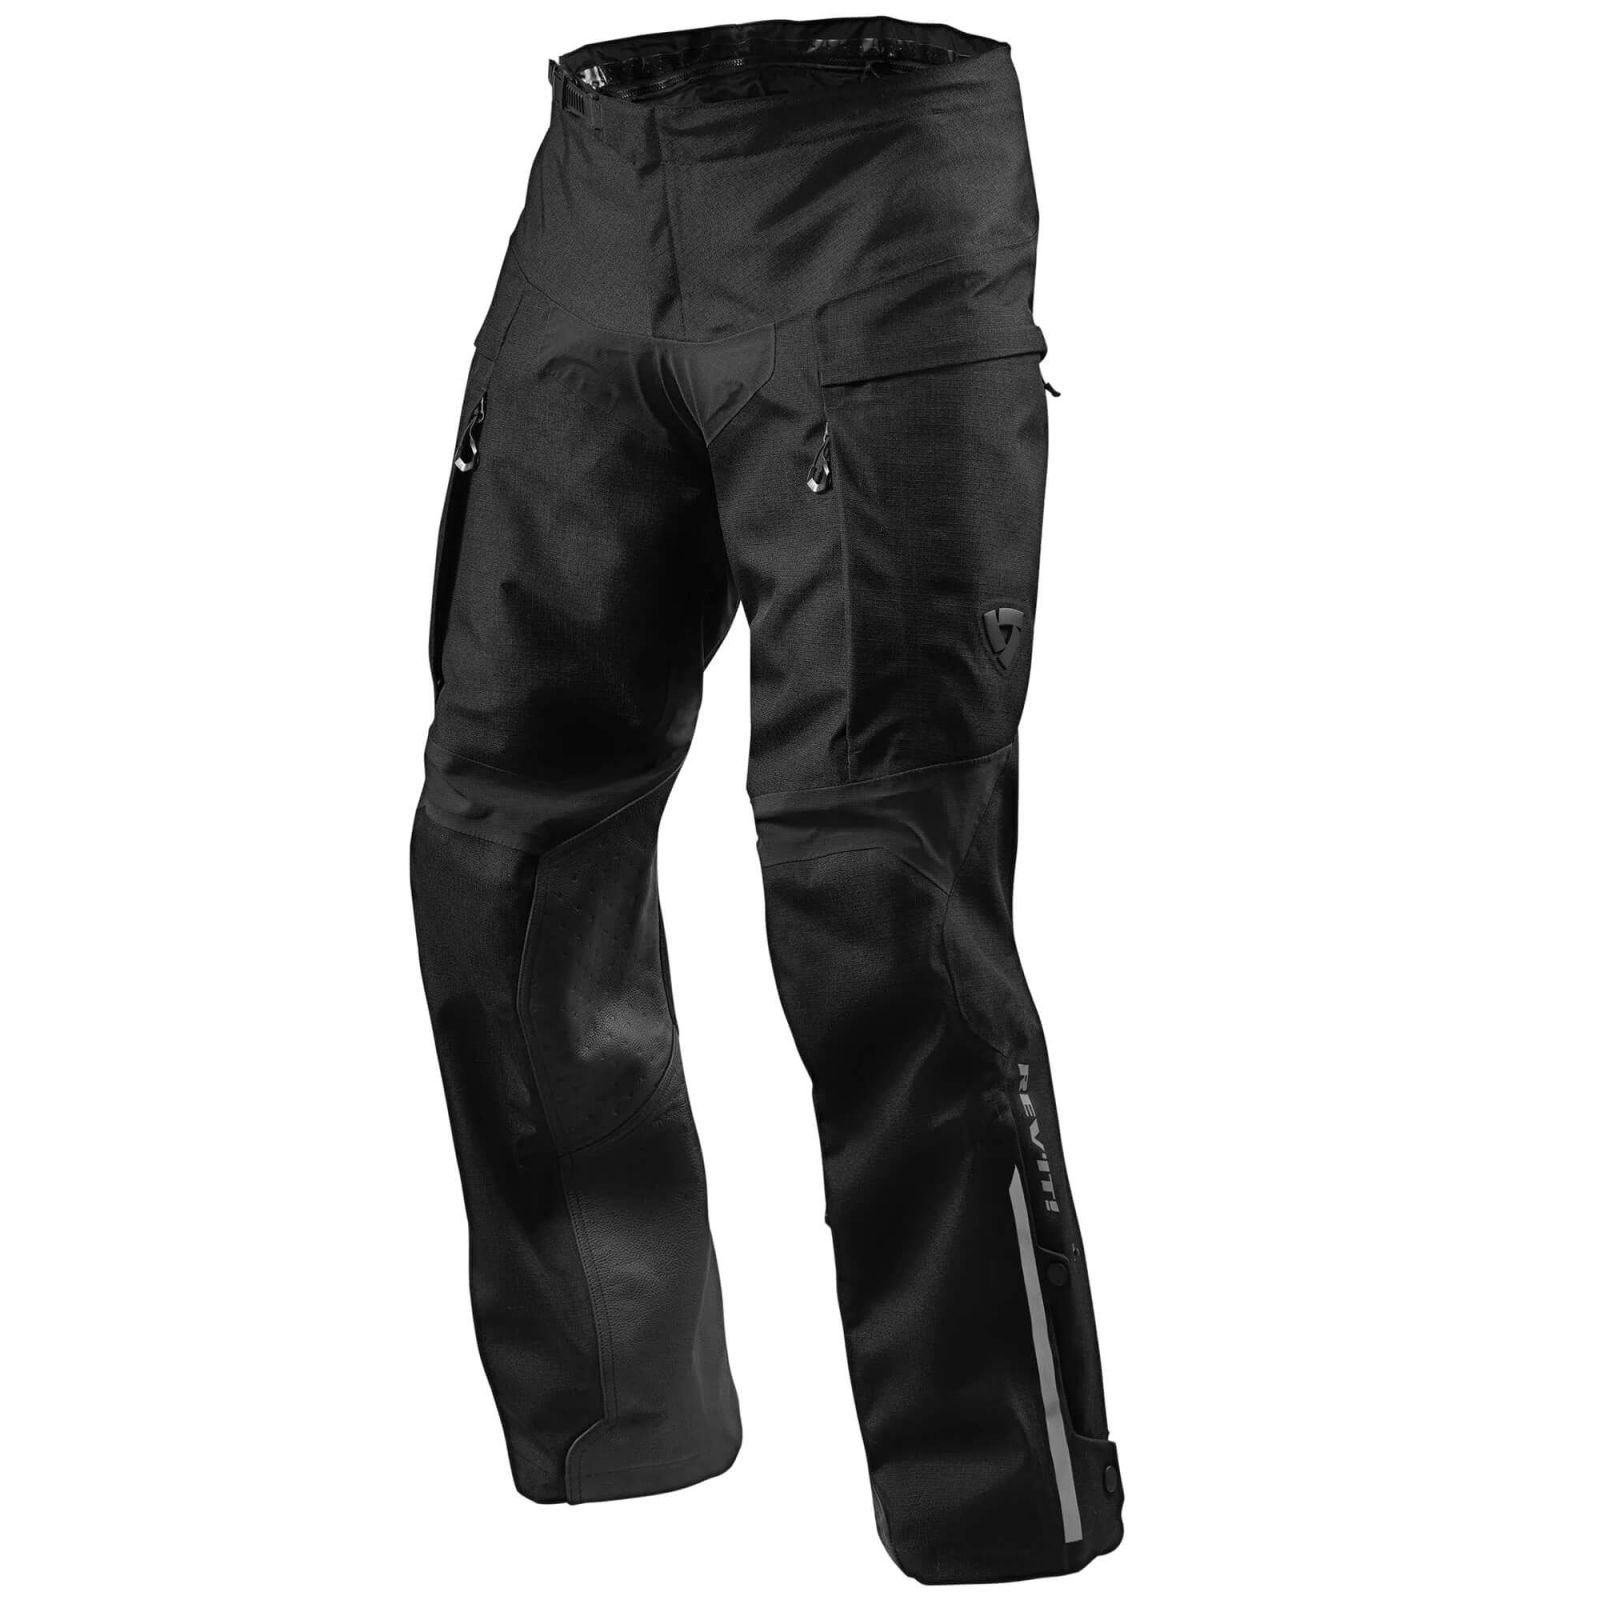 TLA Men's Motorcycle Pants with Motorcycle Protectors EXPLORA - Men's  Motorcycle Clothing - Men's Motorcycle Pants Motocross Protectors CE Level  1-2-Layer Motocross Pants Grey : Amazon.co.uk: Automotive